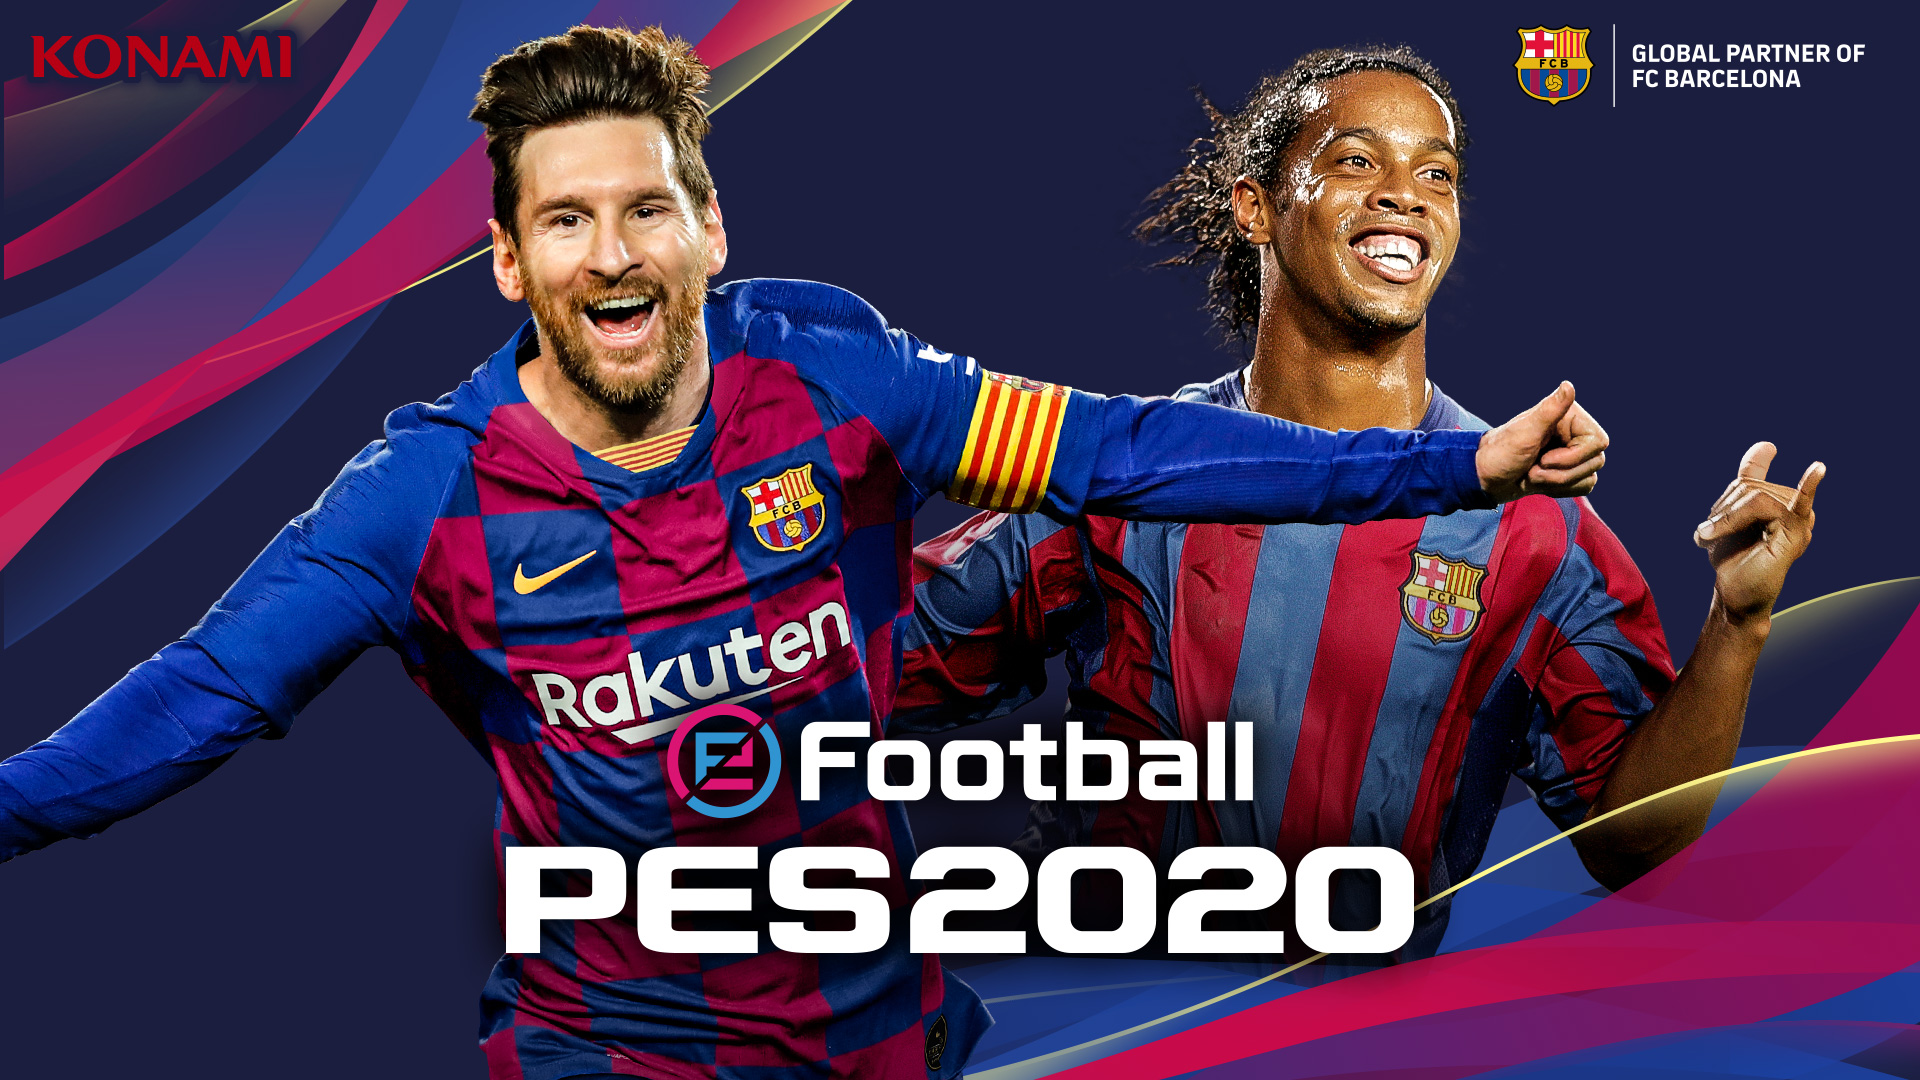 barba ir de compras ignorar El FC Barcelona renueva su acuerdo con KONAMI, que ficha a Messi para la  portada de la nueva edición del eFootball PES 2020